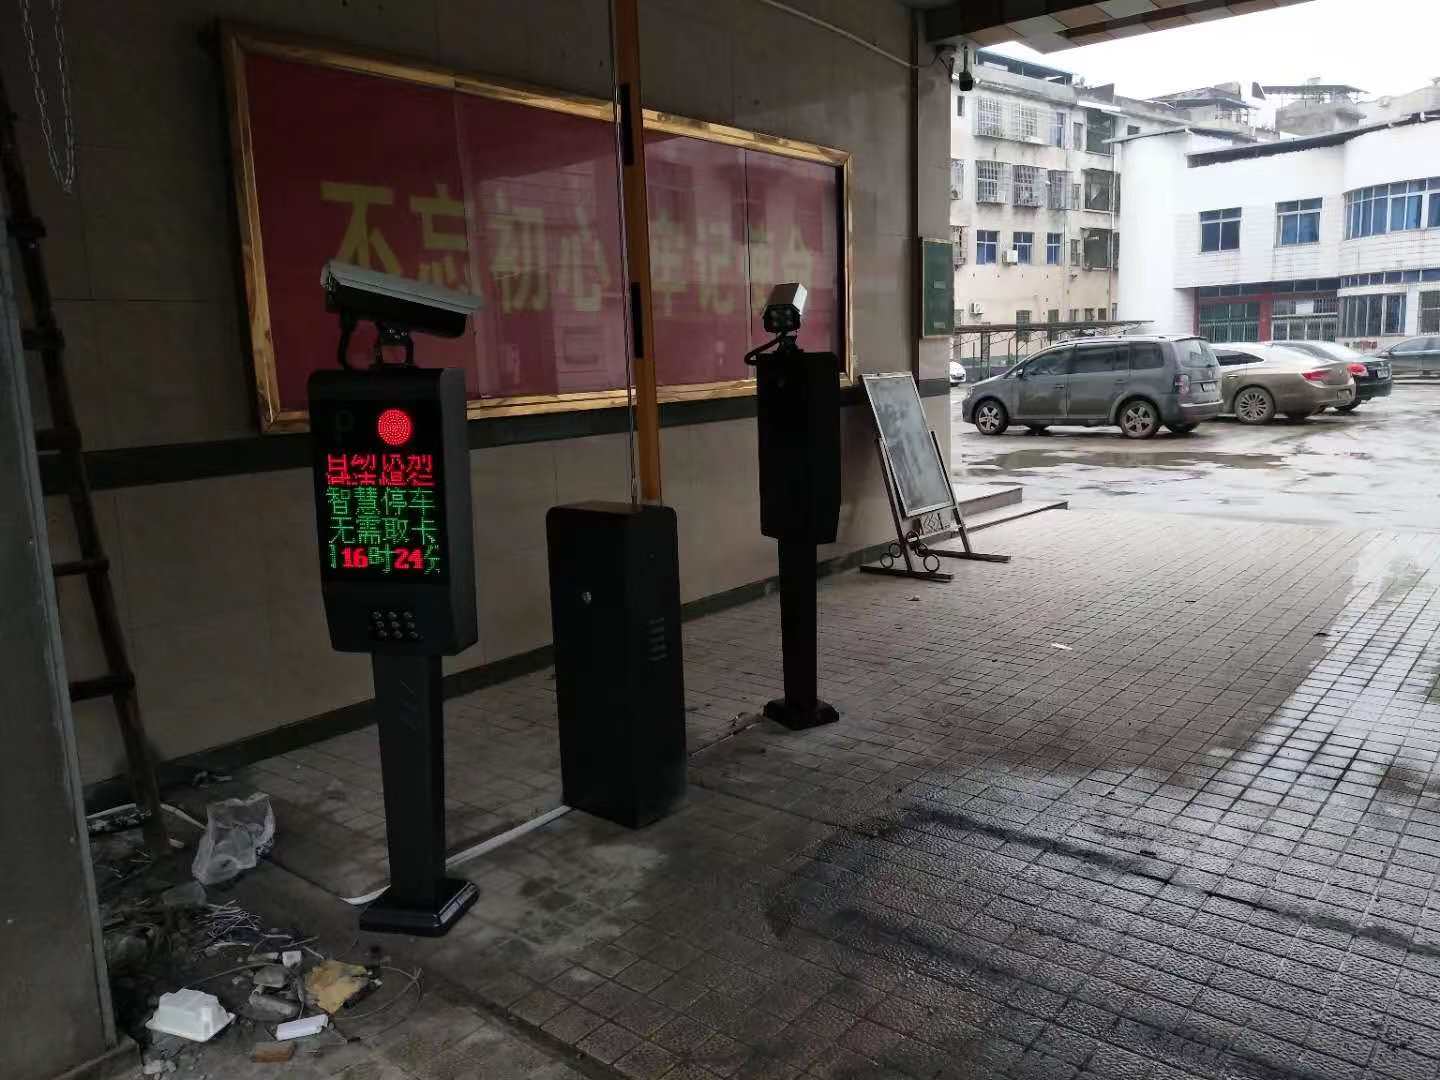 祁阳县第二税务局车牌识别系统